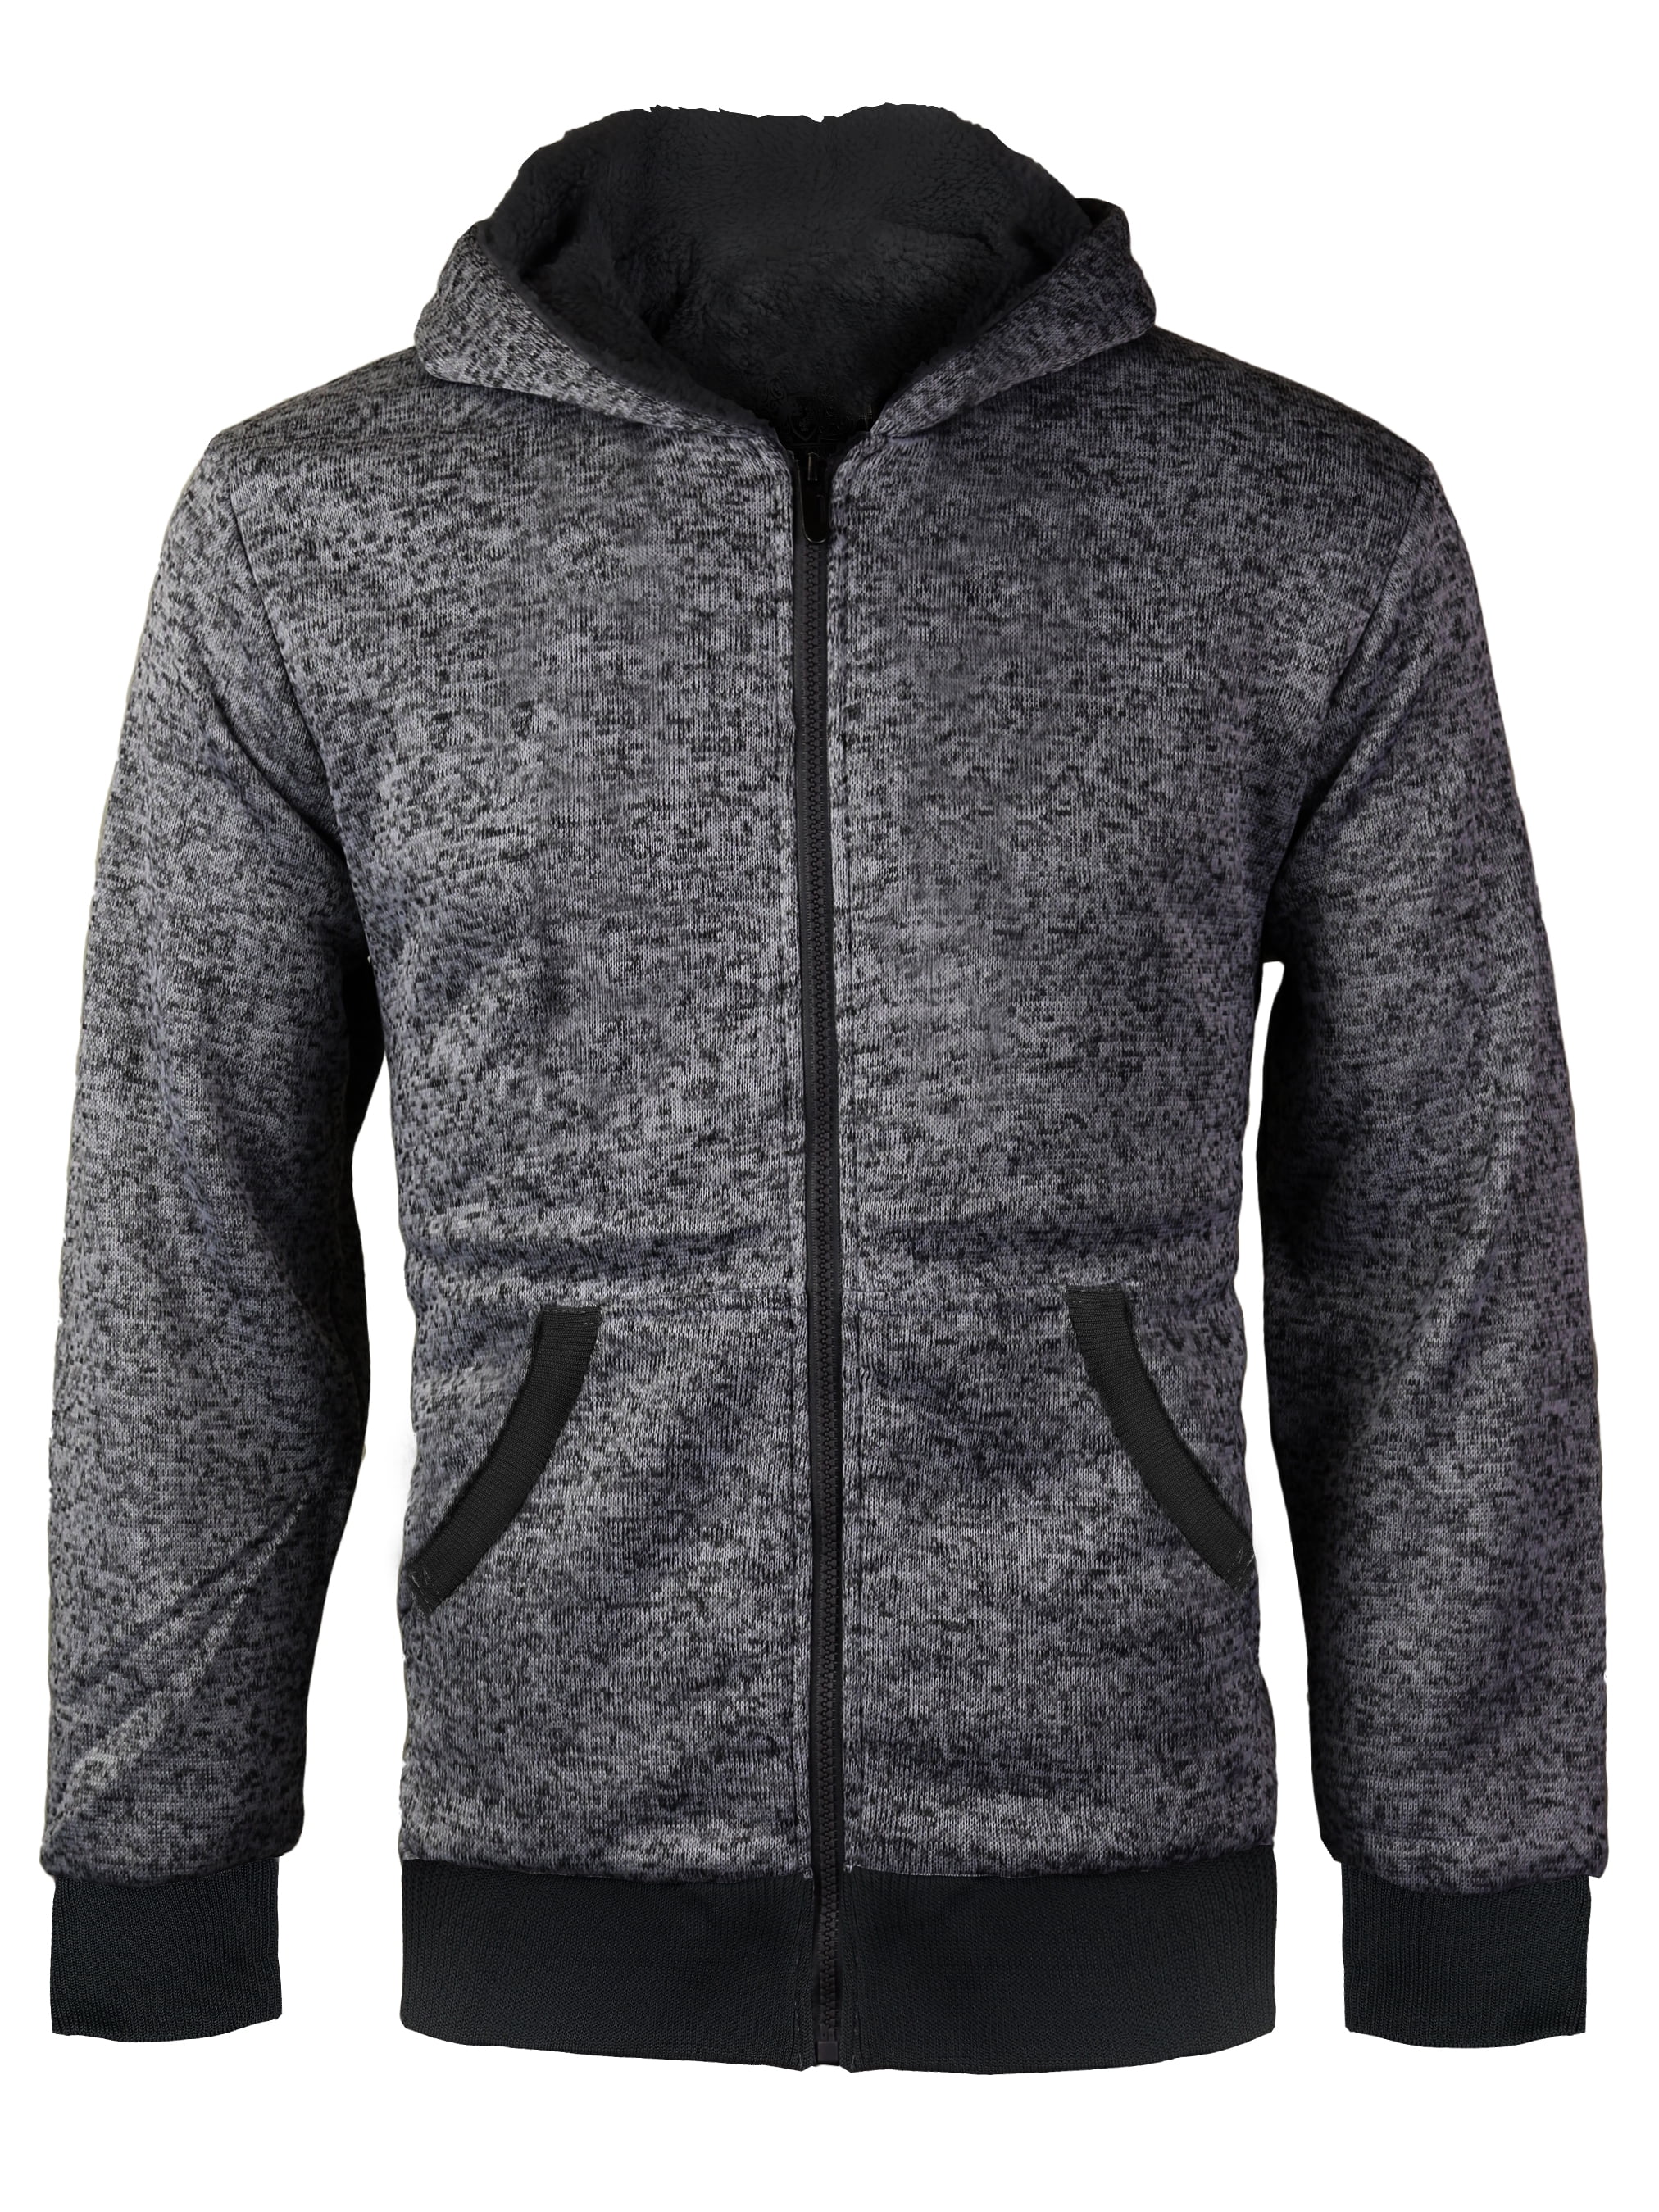 Kids black Sherpa Lined Fleece Zip Up Hoodie Sweater Jacket size S,M,L,XL NEW! 